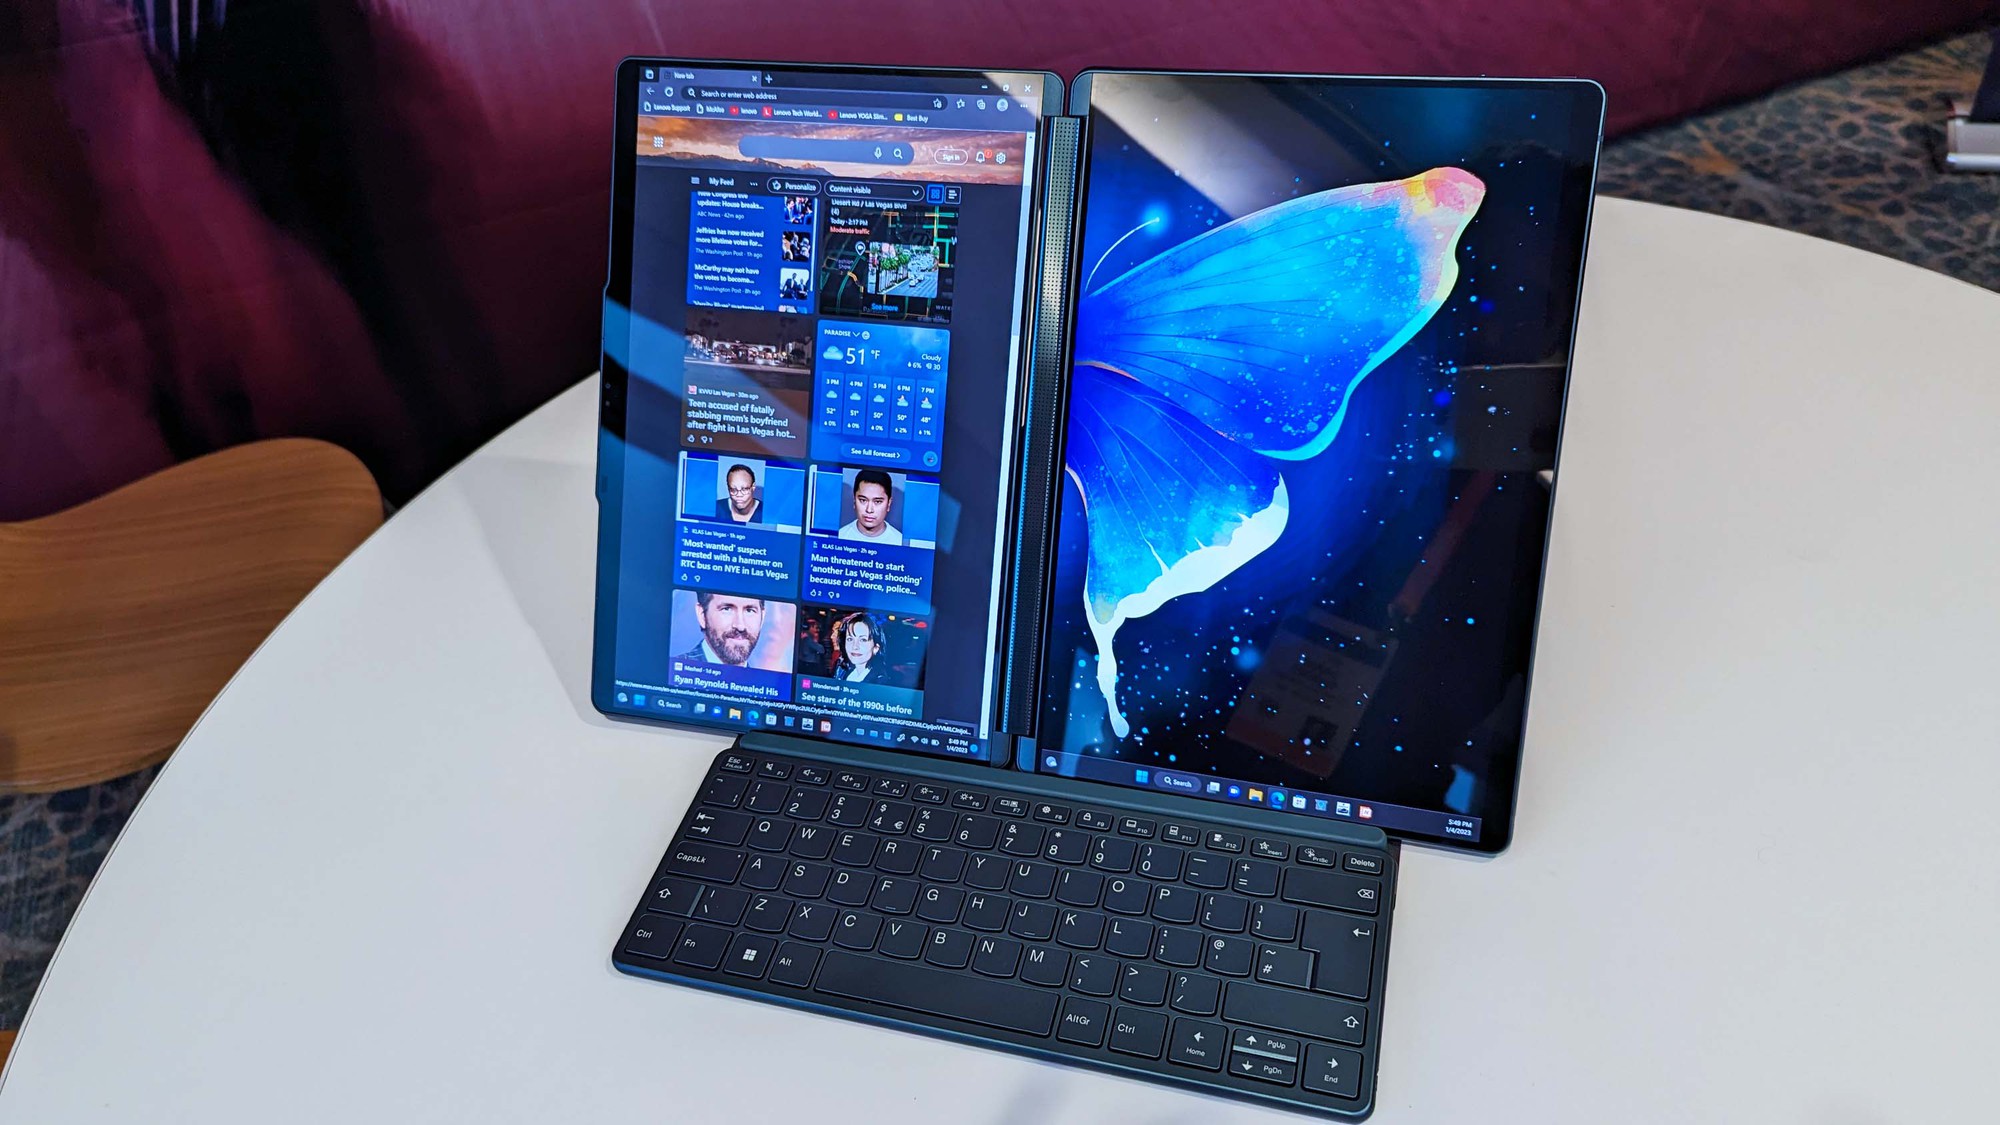 Lenovo ra mắt chiếc laptop Yoga Book 9i sở hữu 2 màn hình OLED 13,3 inch - Ảnh 2.